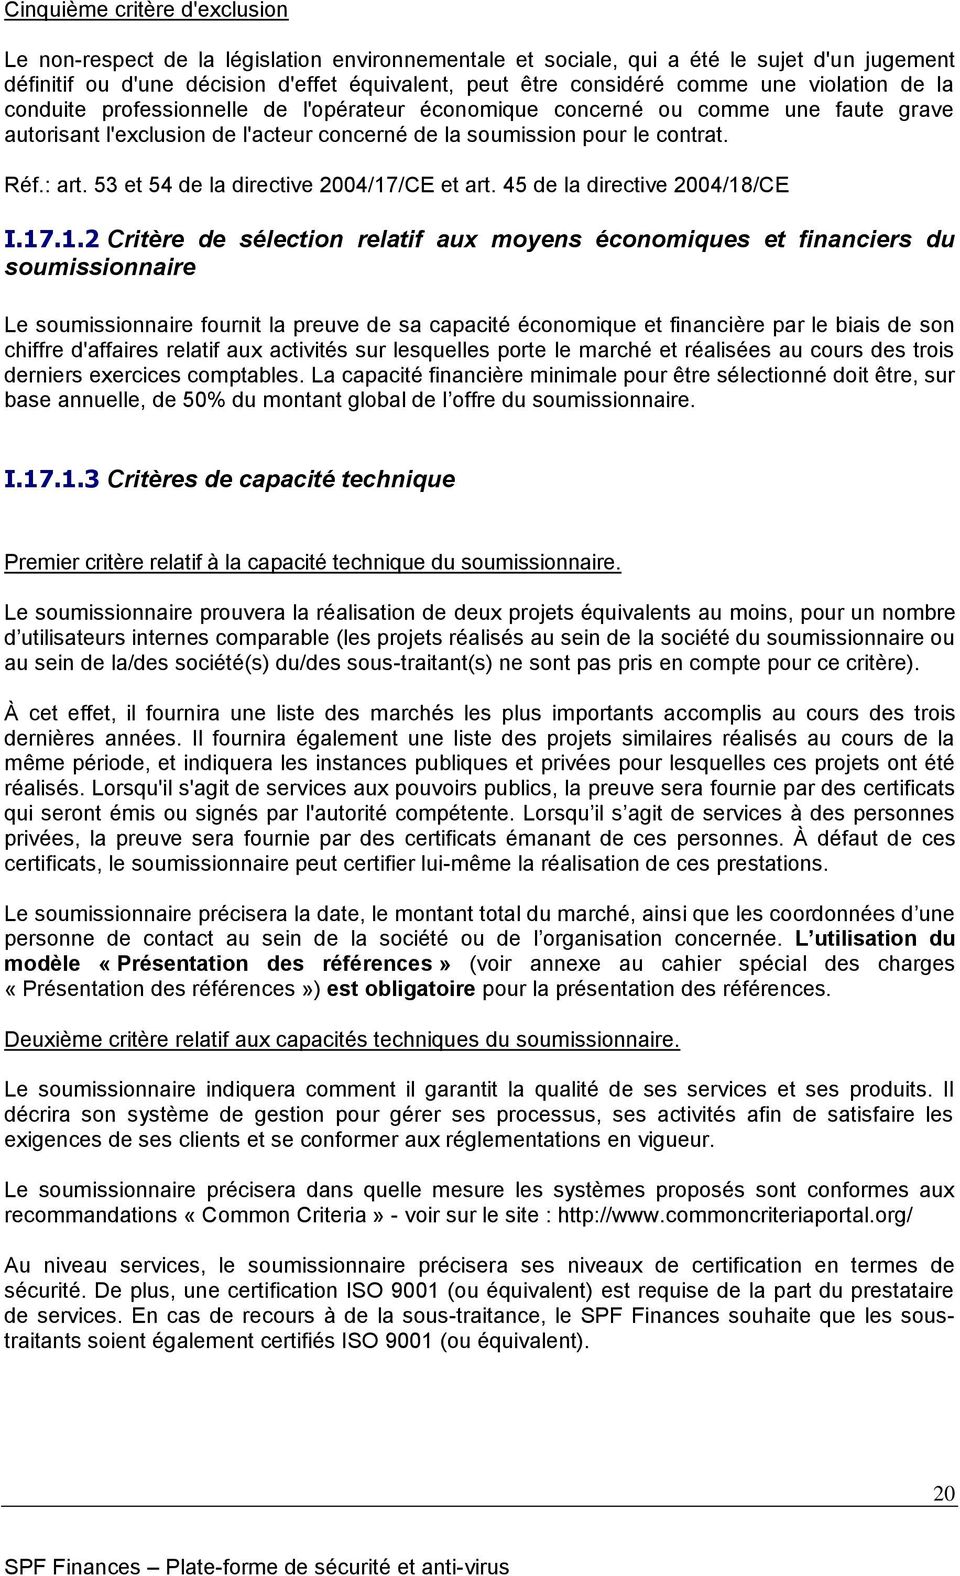 53 et 54 de la directive 2004/17